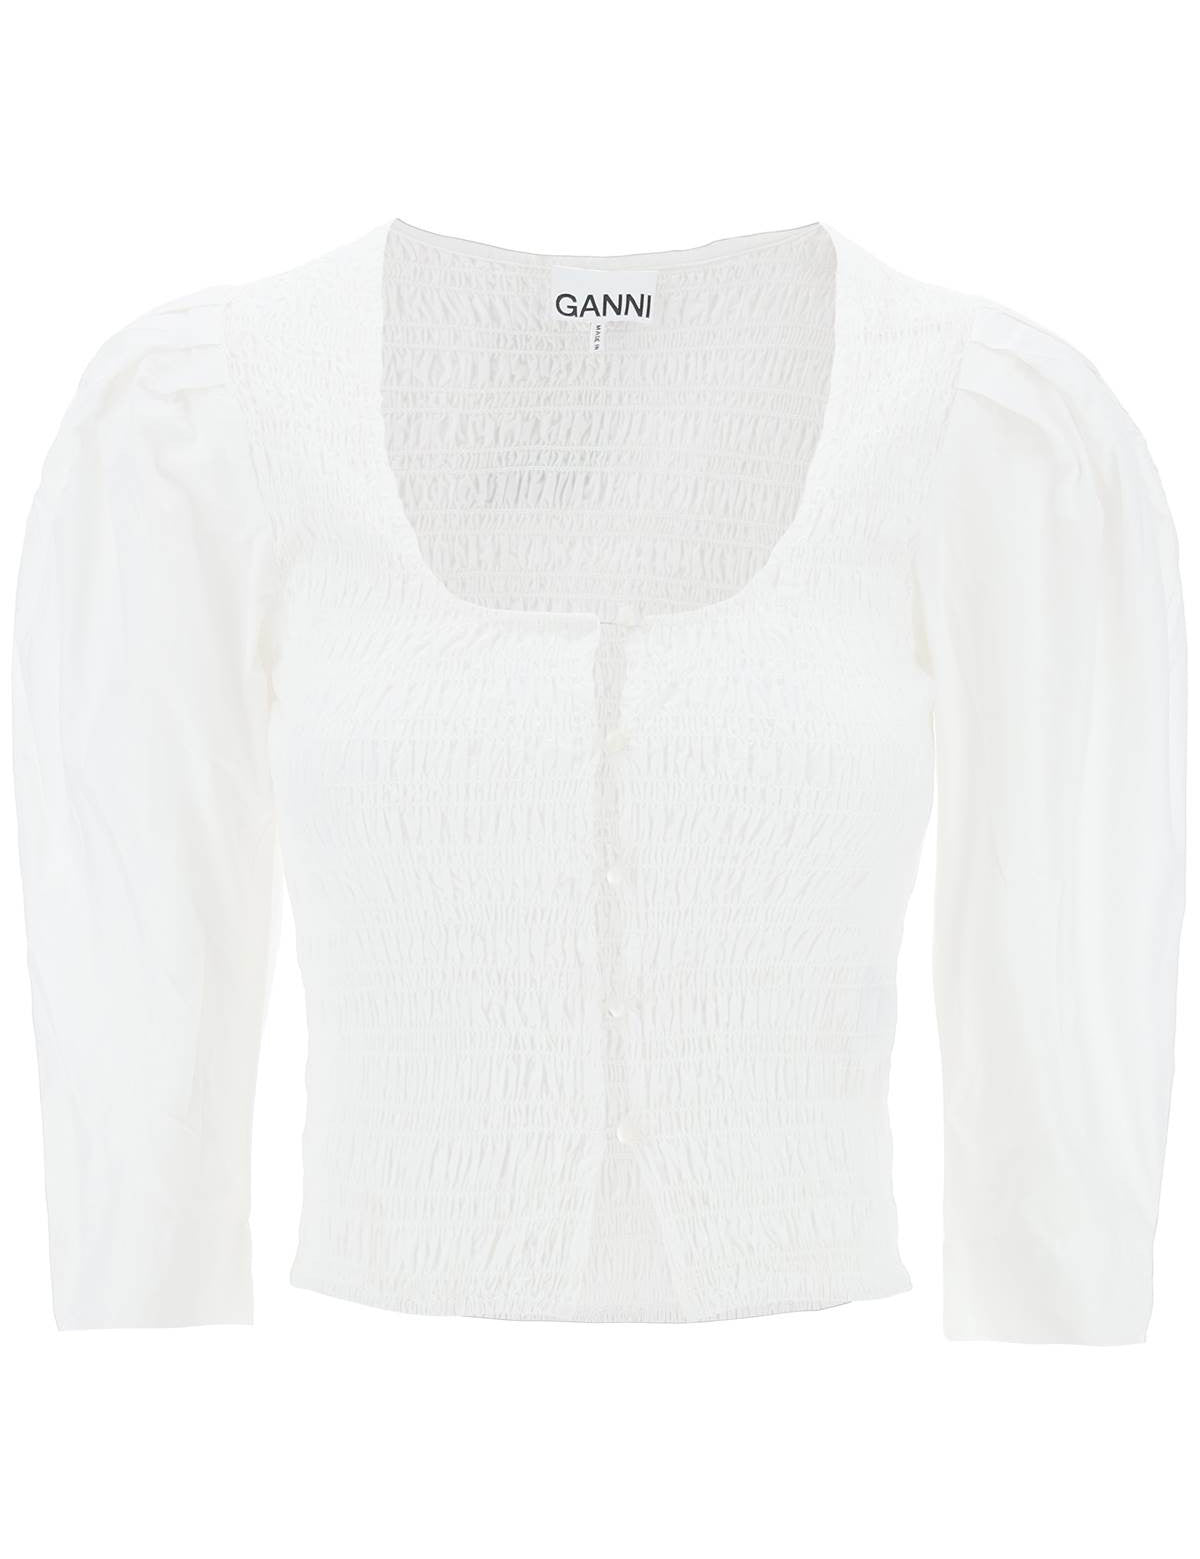 ganni-poplin-smock-blouse.jpg